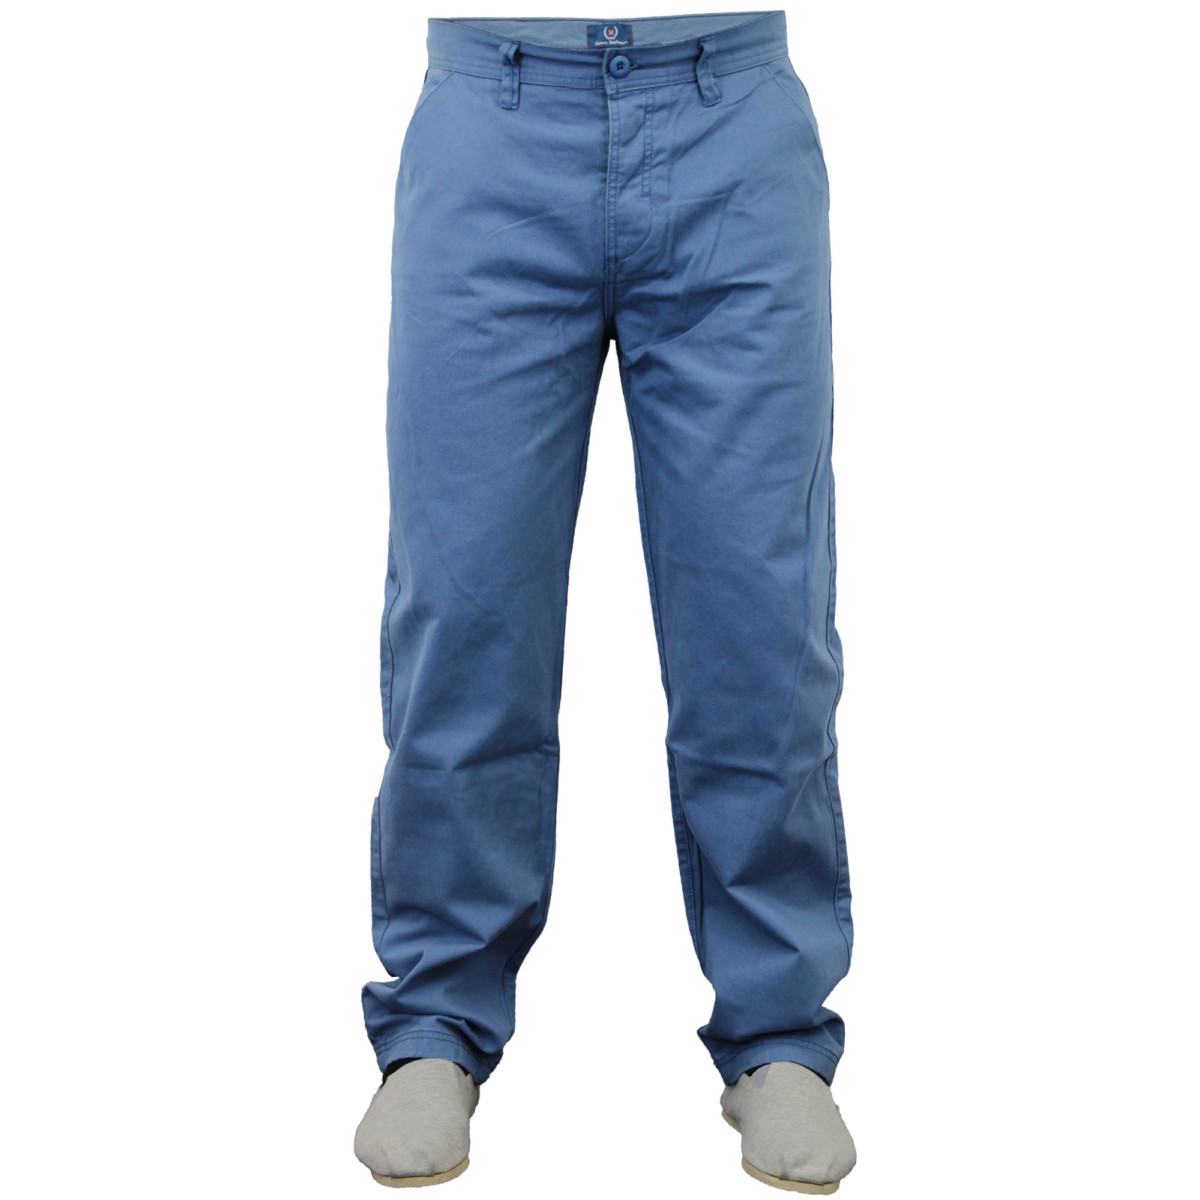 Mens Chino Jeans Huston Harbour Kushiro City Trousers Classic Comfort